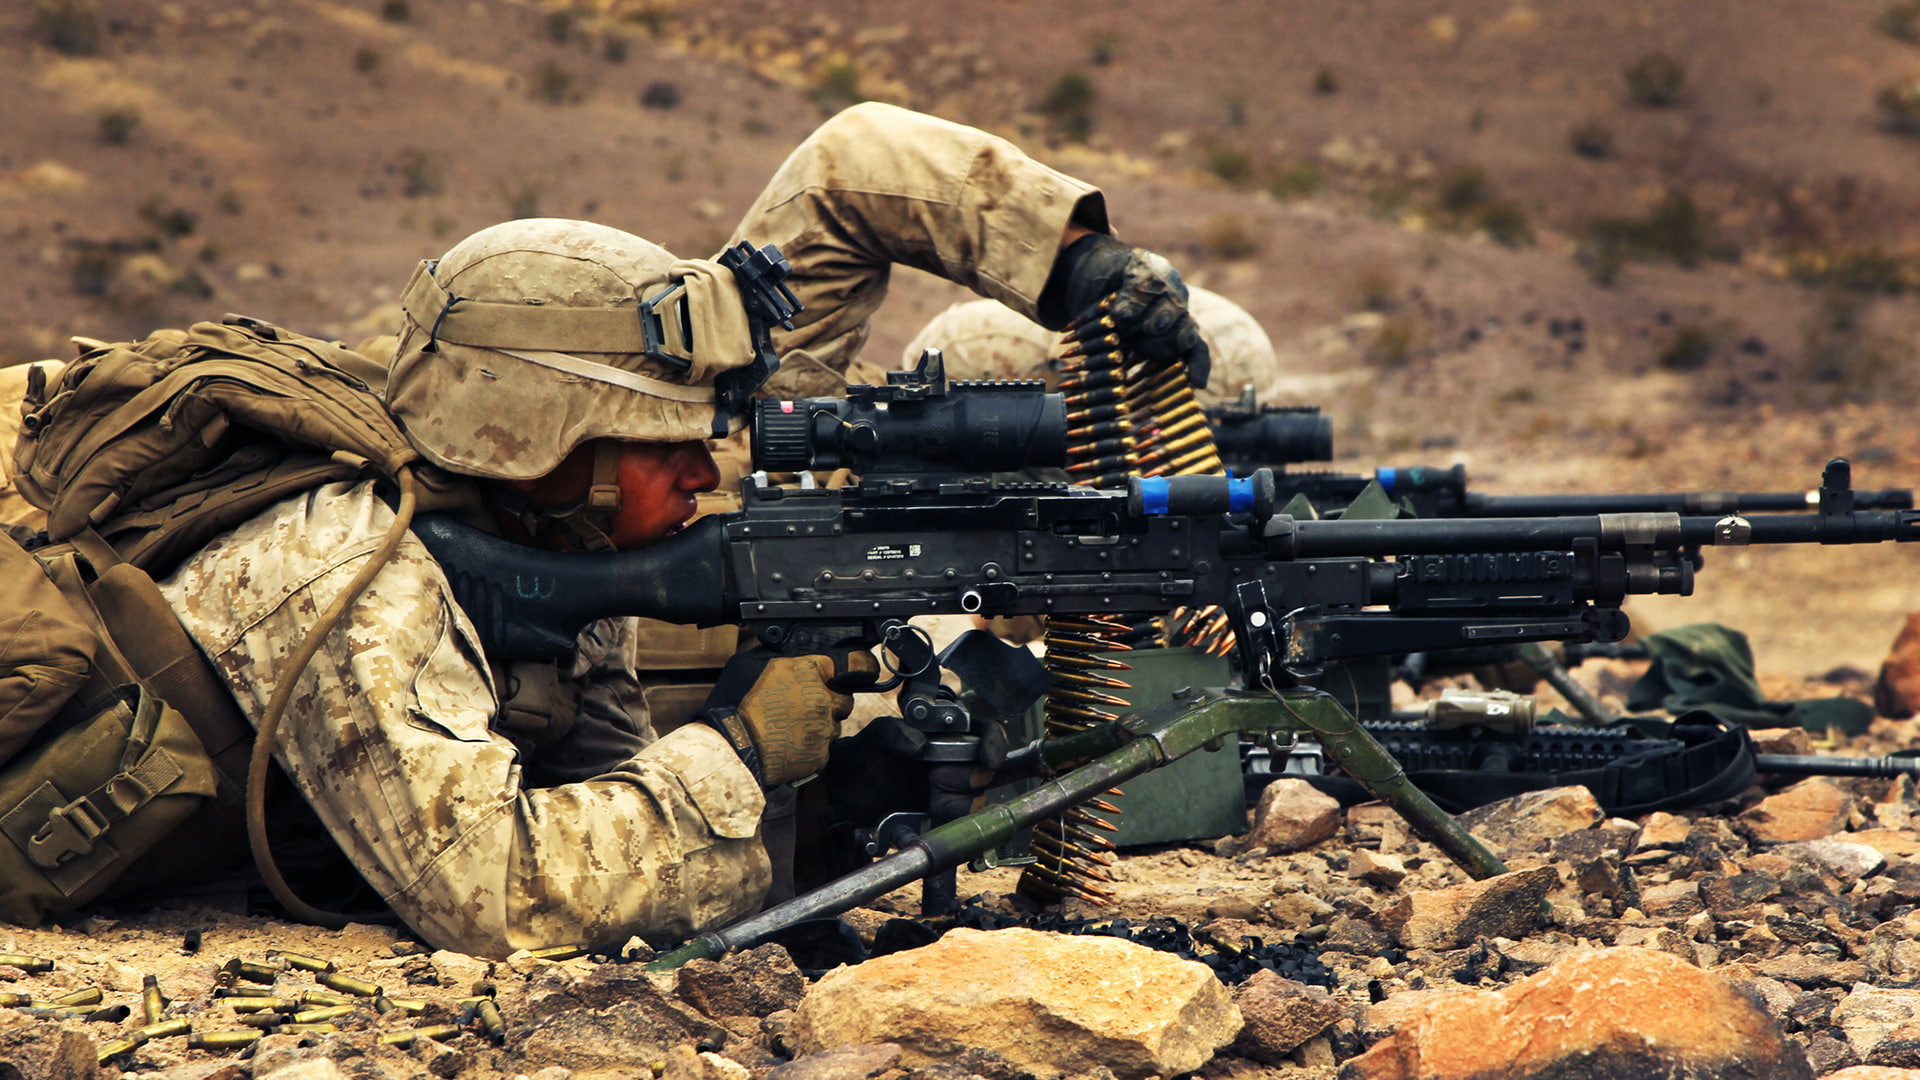 rock, soldiers, M240, machine gun, ammunition, ground, equipment